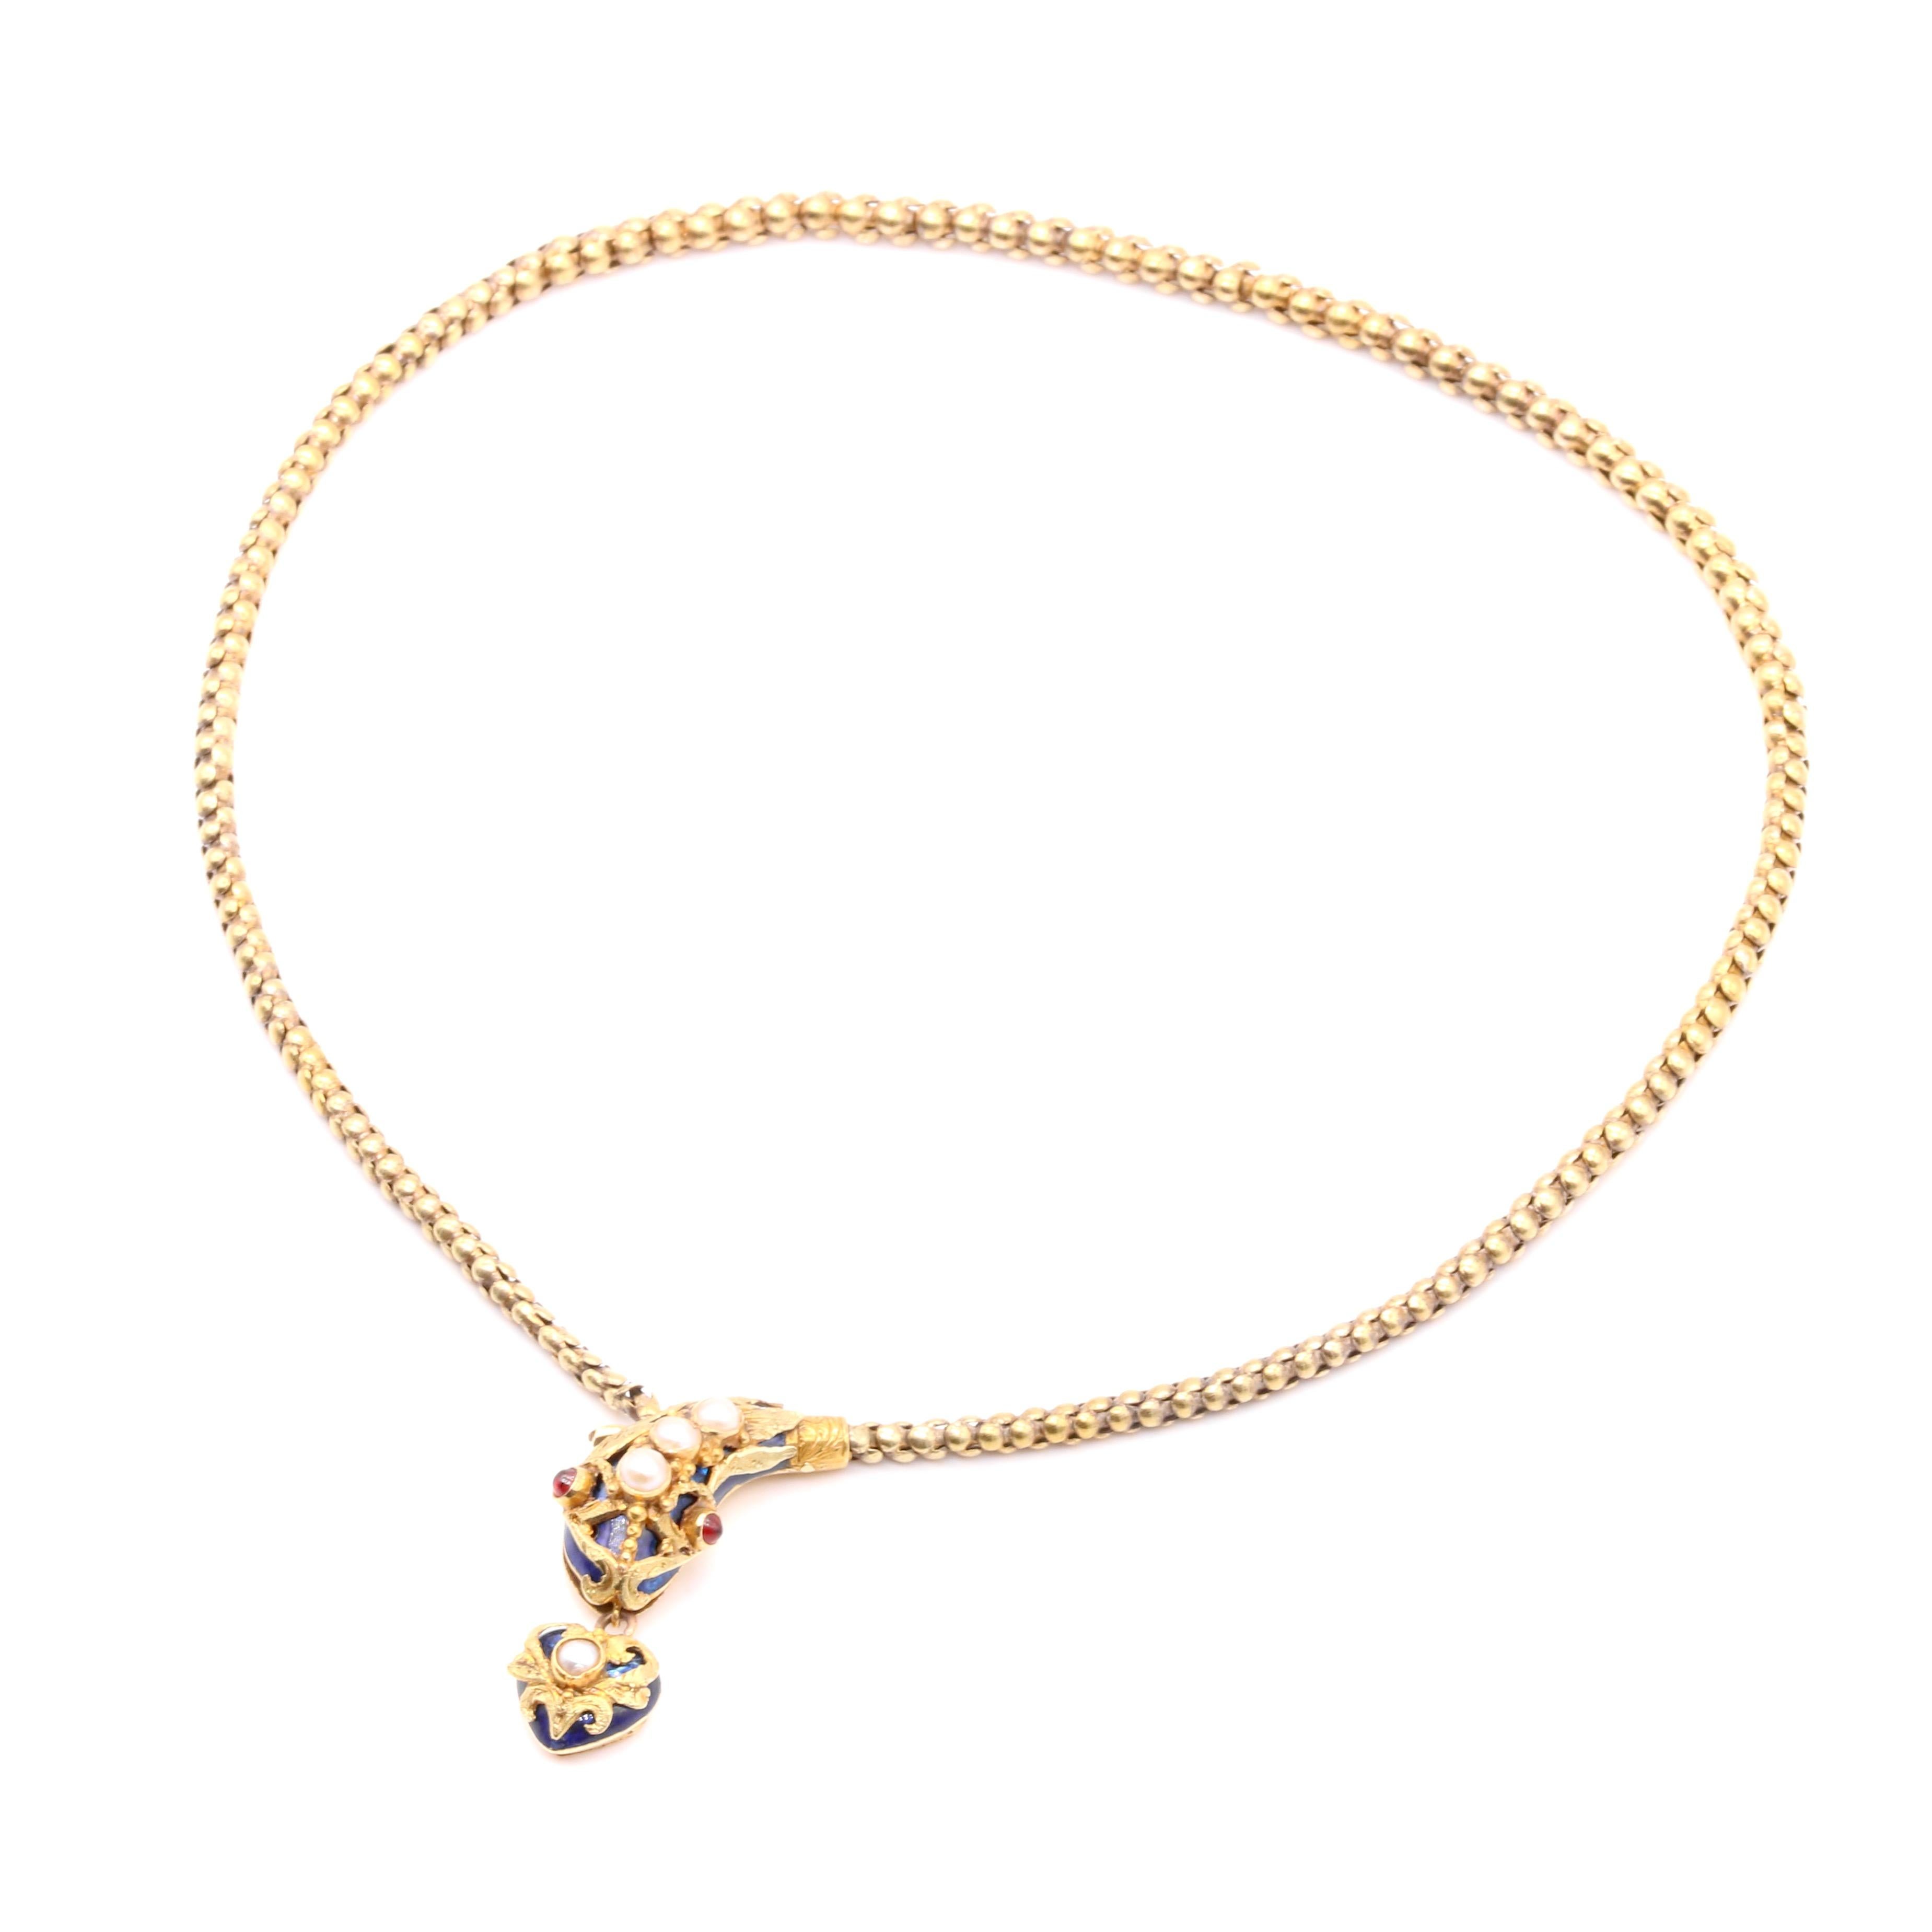 Antique Victorian 1850s 18K Gold Blue Enamel Pearl & Garnet Snake Necklace For Sale 2